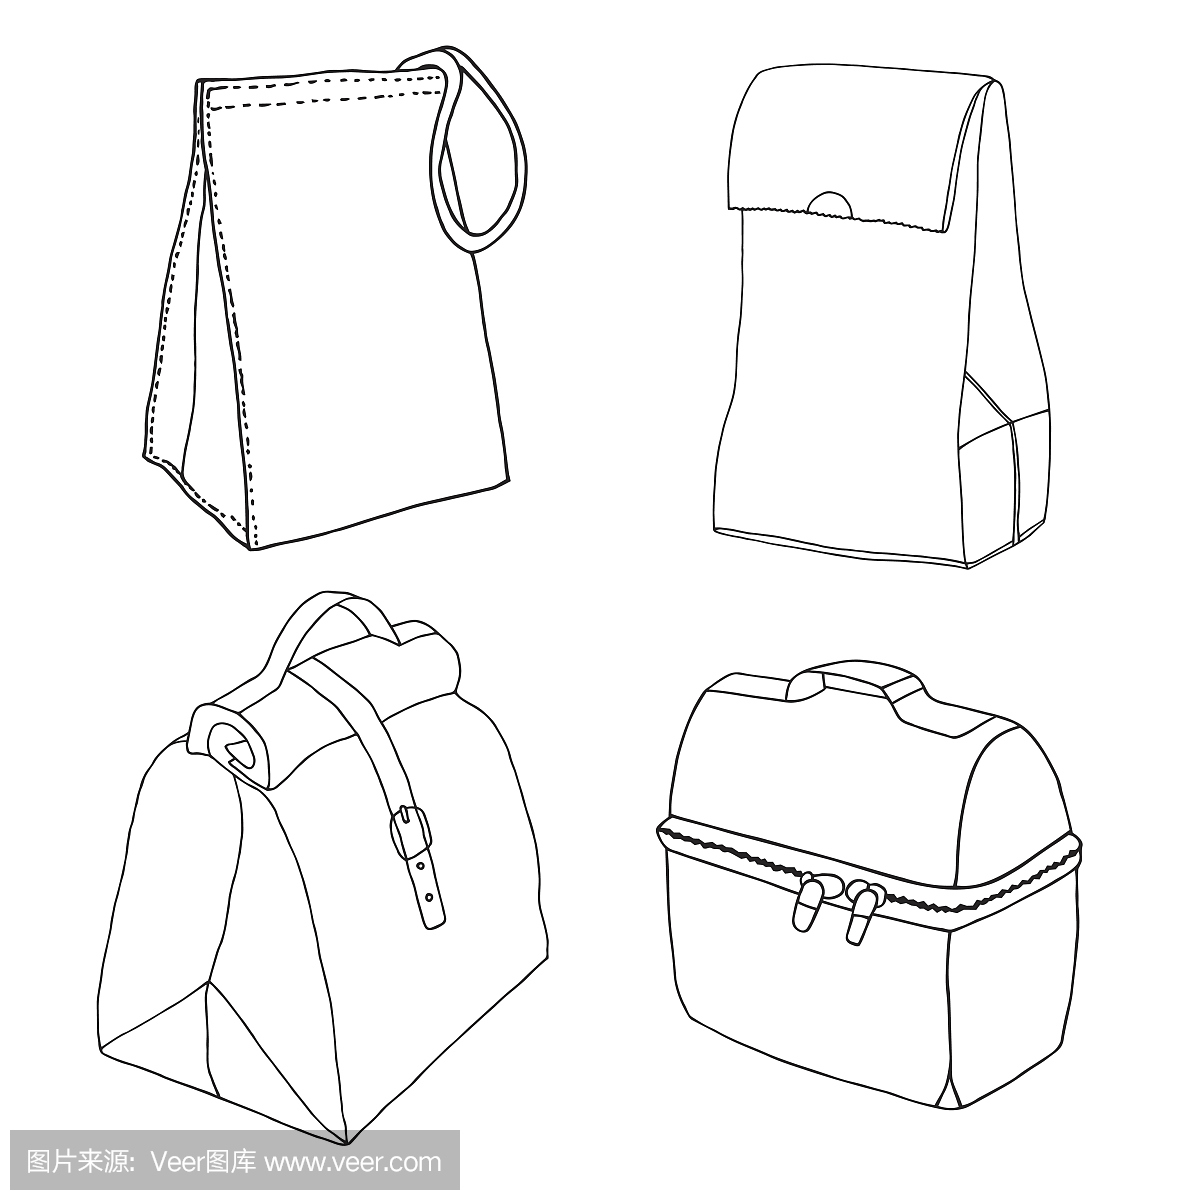 午餐盒系列。简单的午餐袋概念。各种食品袋和